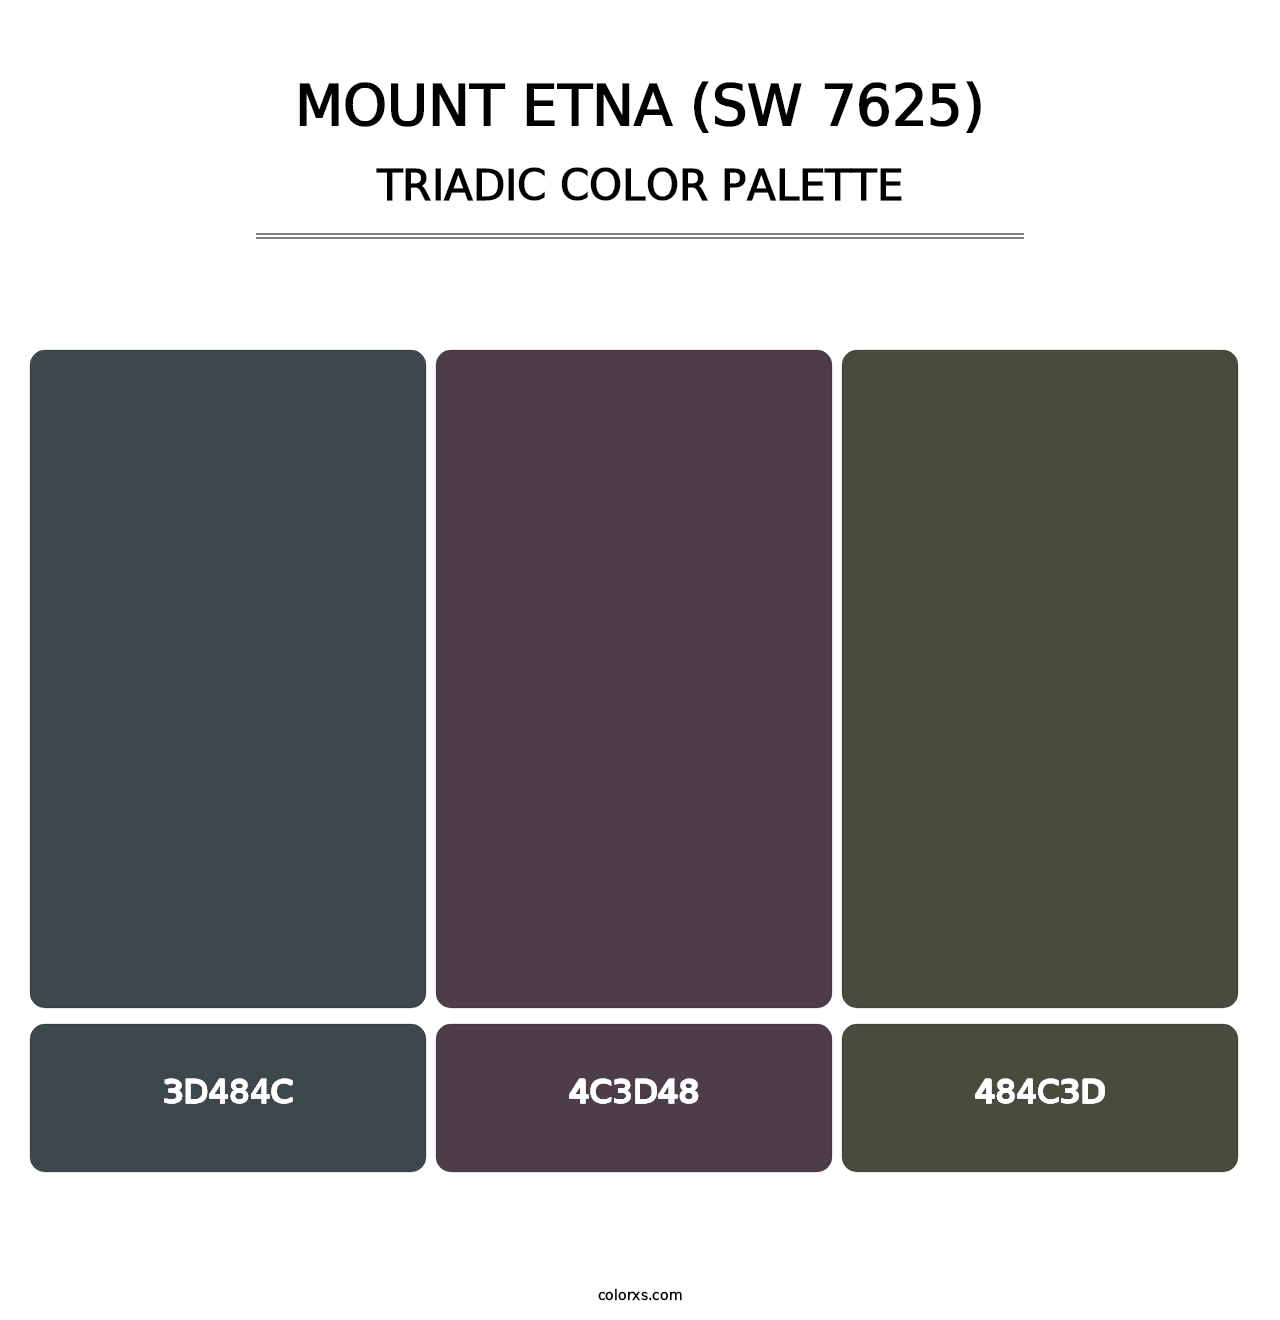 Mount Etna (SW 7625) - Triadic Color Palette